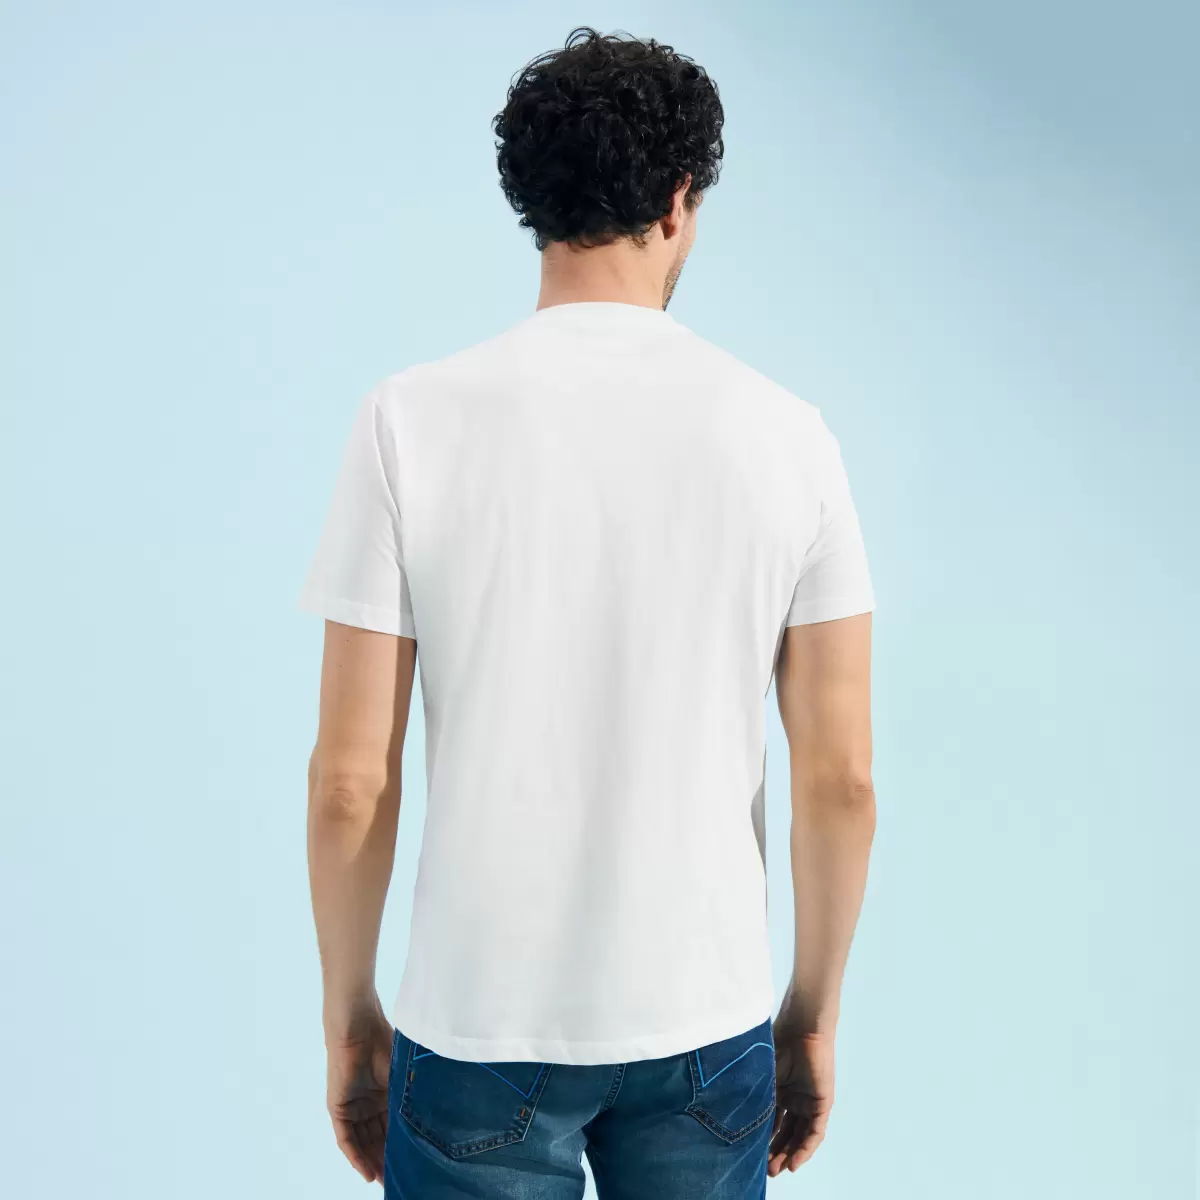 Popularität T-Shirts Off White / Weiss Herren Vilebrequin Monte Carlo T-Shirt Aus Baumwolle Für Herren - 1